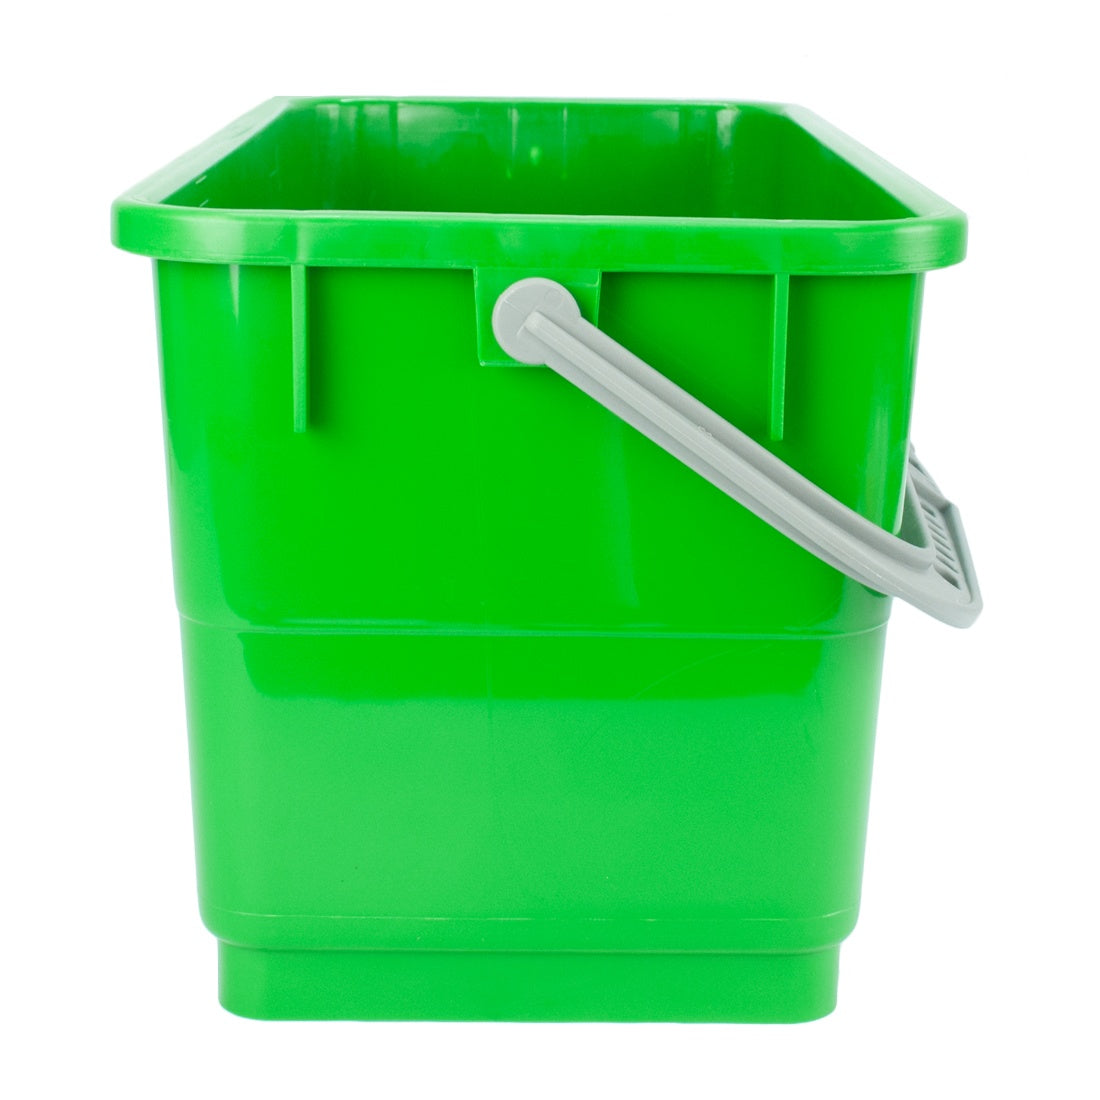 Pulex Buckets, Window Cleaning Supplies